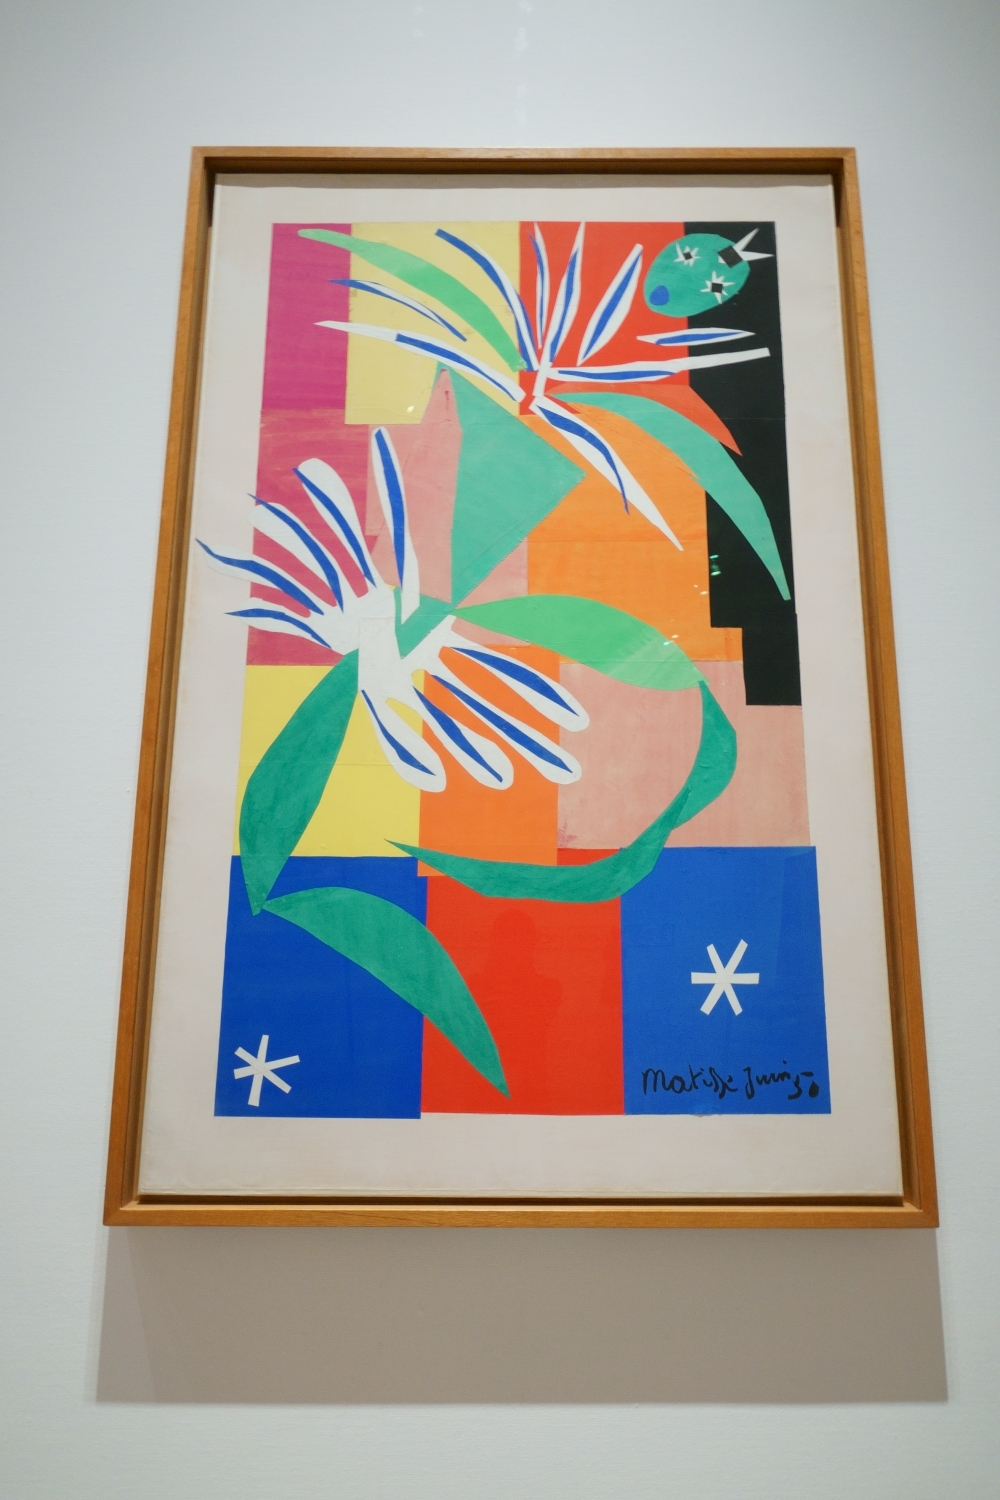  アンリ・マティス《クレオールの踊り子》1950年 ニース市マティス美術館蔵 (C) Succession H.Matisse